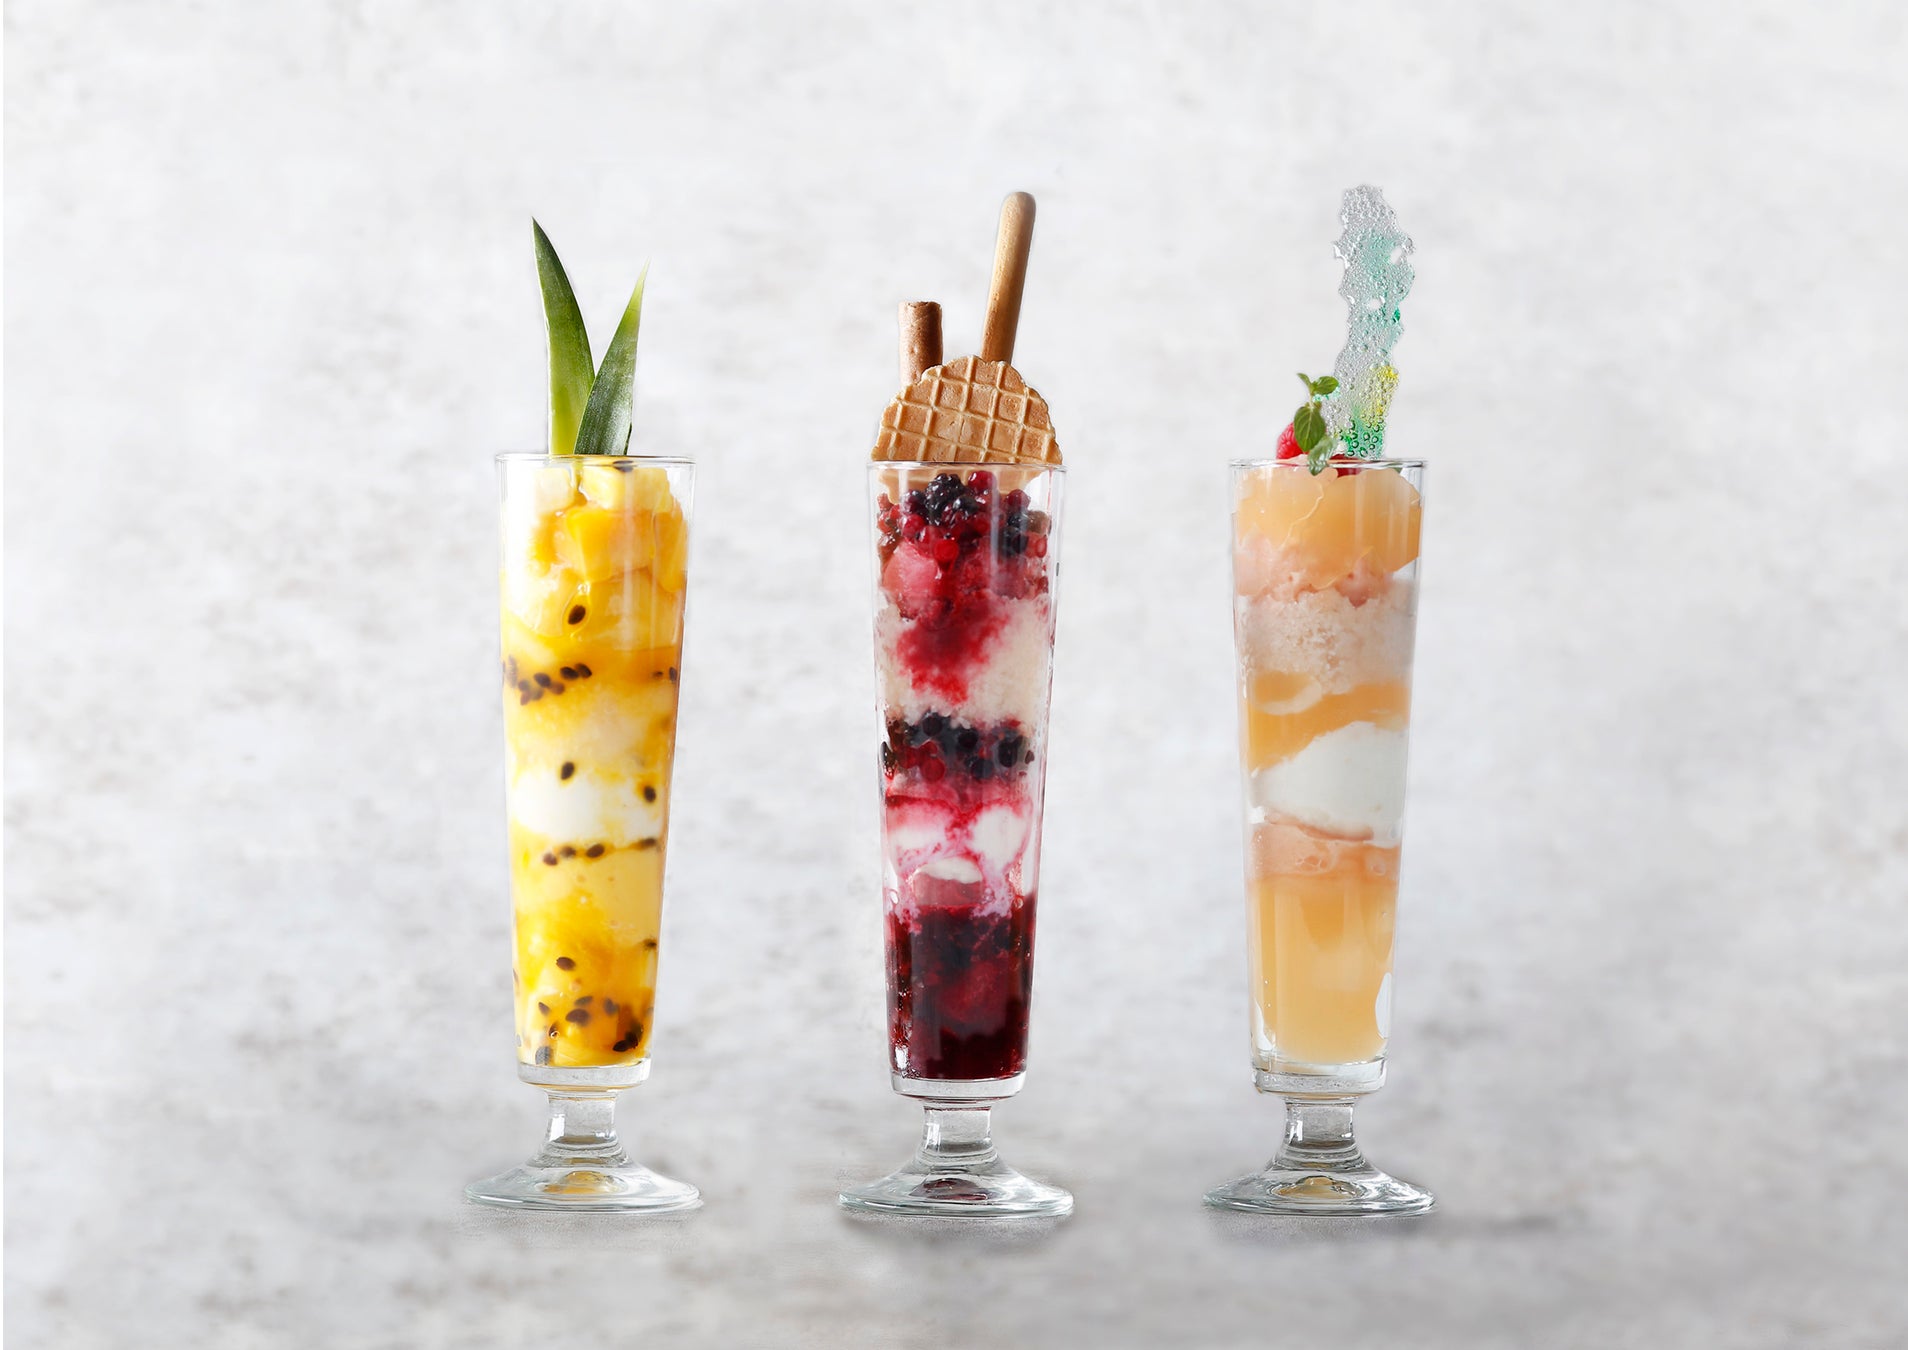 【ウェスティンホテル東京】恵比寿の天空に潜むスカイバー「エスカリエ」の本格的な夏のデザートとしてフルーツが織りなす層が華やかな「フローズンパフェ」